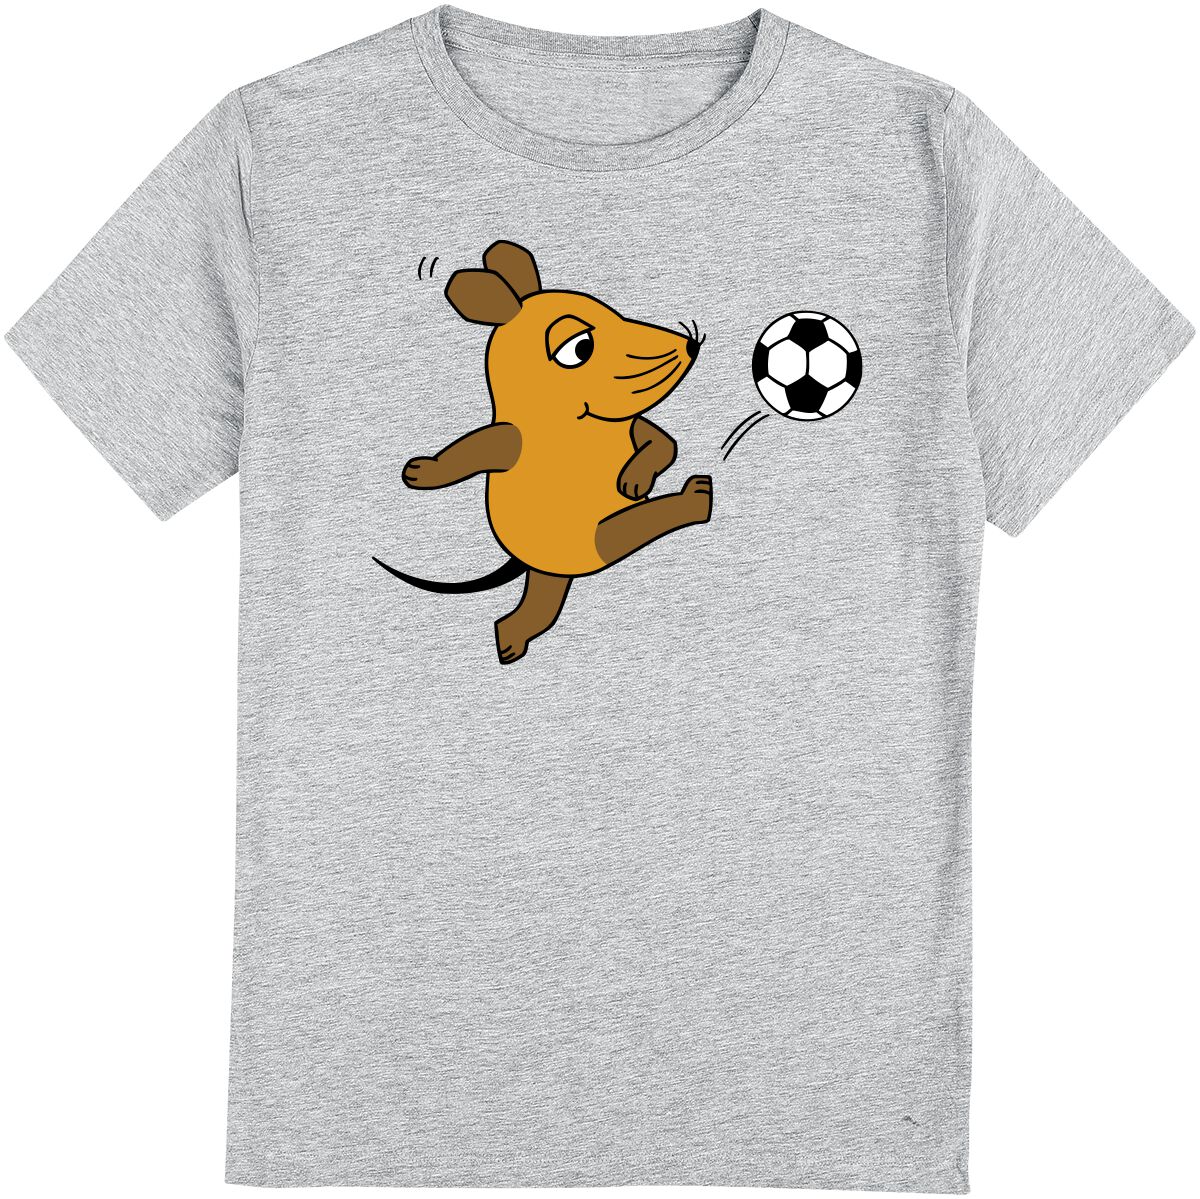 Die Sendung mit der Maus Kids - Die Maus - Fußball T-Shirt grau meliert in 116